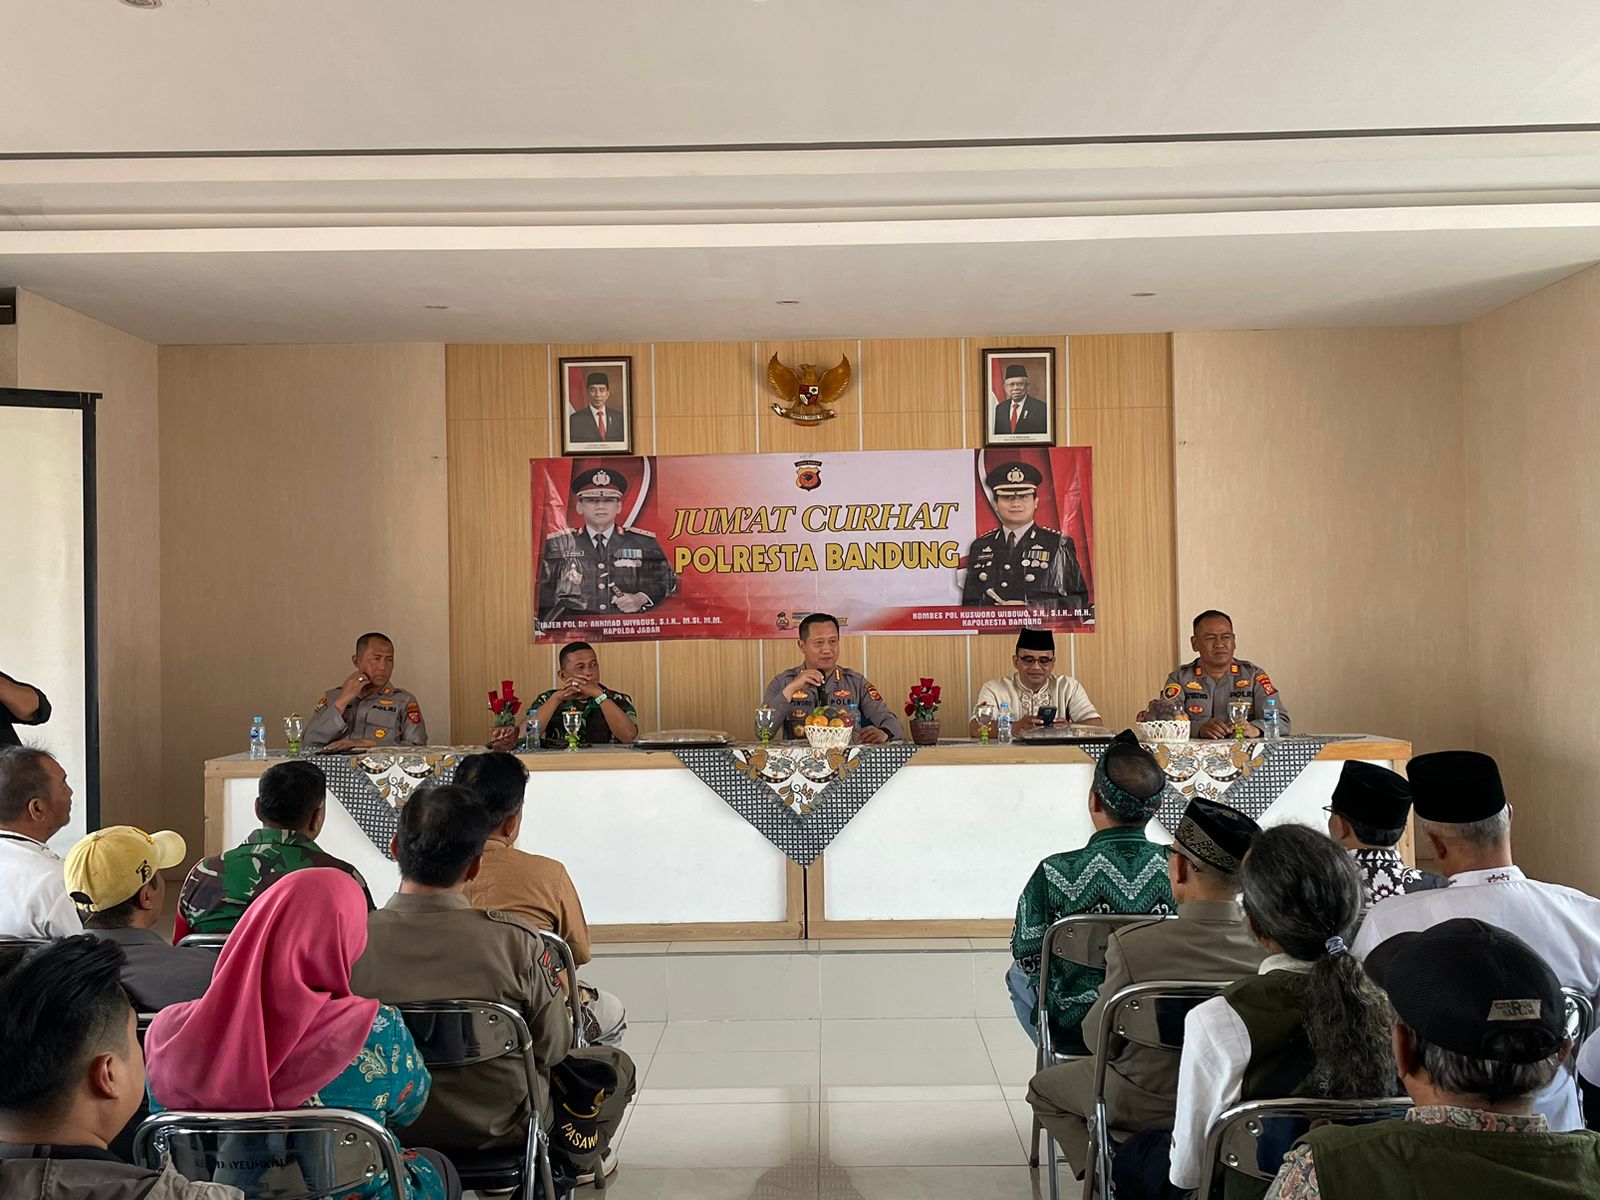 Polresta Bandung menggelar Jumat Curhat ke 30 di Kecamatan Dayeuhkolot, tepatnya di Aula Kecamatan Dayeuhkolot, Kabupaten Bandung, Jawa Barat, Jumat, 8 September 2023. Jabar Ekspres/Agi.